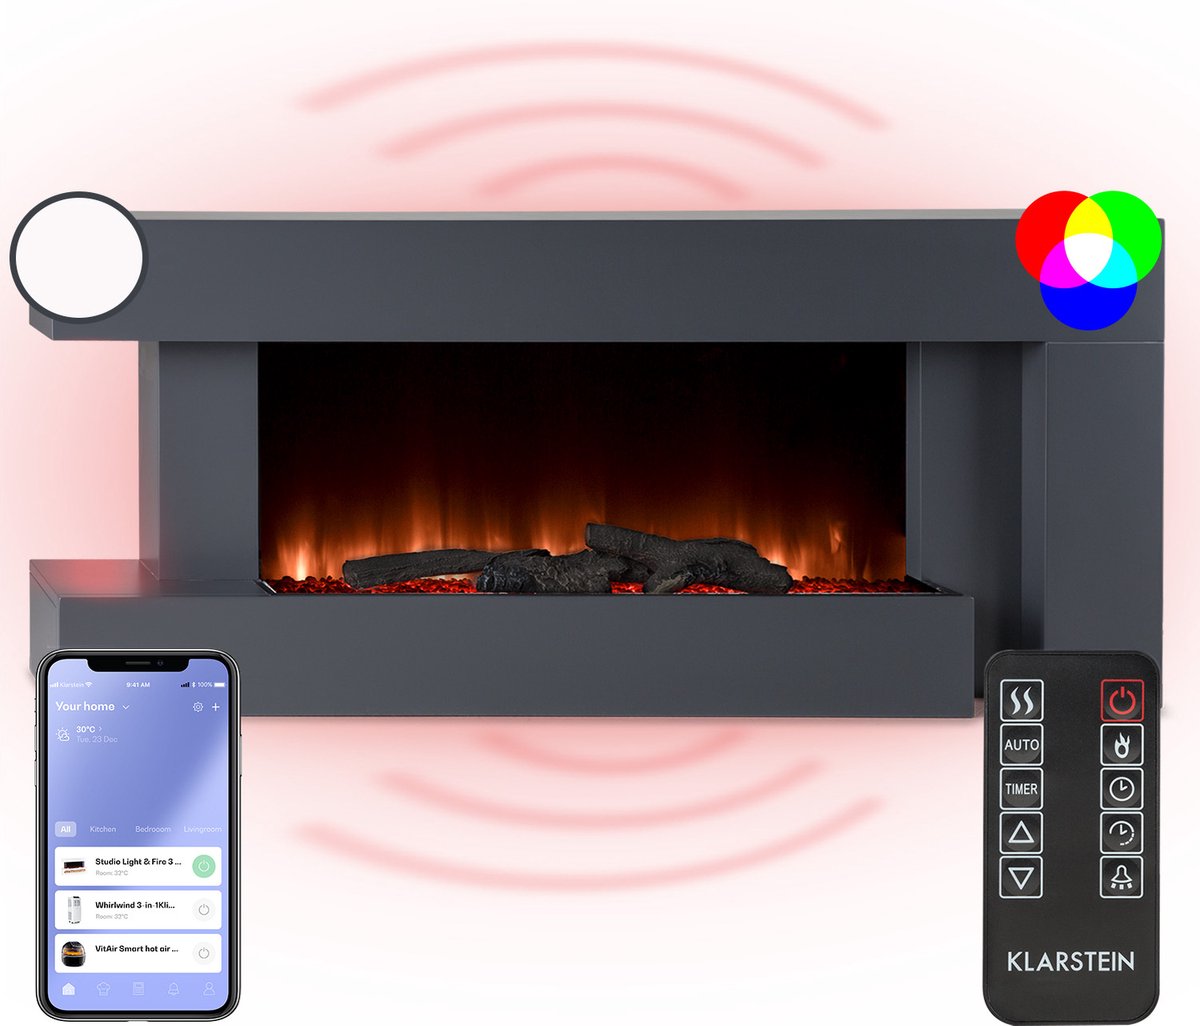 Klarstein Studio Light & Fire 2 Smart Haard - LED Vlammenillusie - Verwarmingsfunctie Met 1000/ 2000W - Wifi-Bediening - Sfeerverlichting - Helderheid Vlammen: 5 Standen - Vlammen: 7 Kleuren - Aan/Uit Timer - MDF Behuizing - LED-Display - Zwart